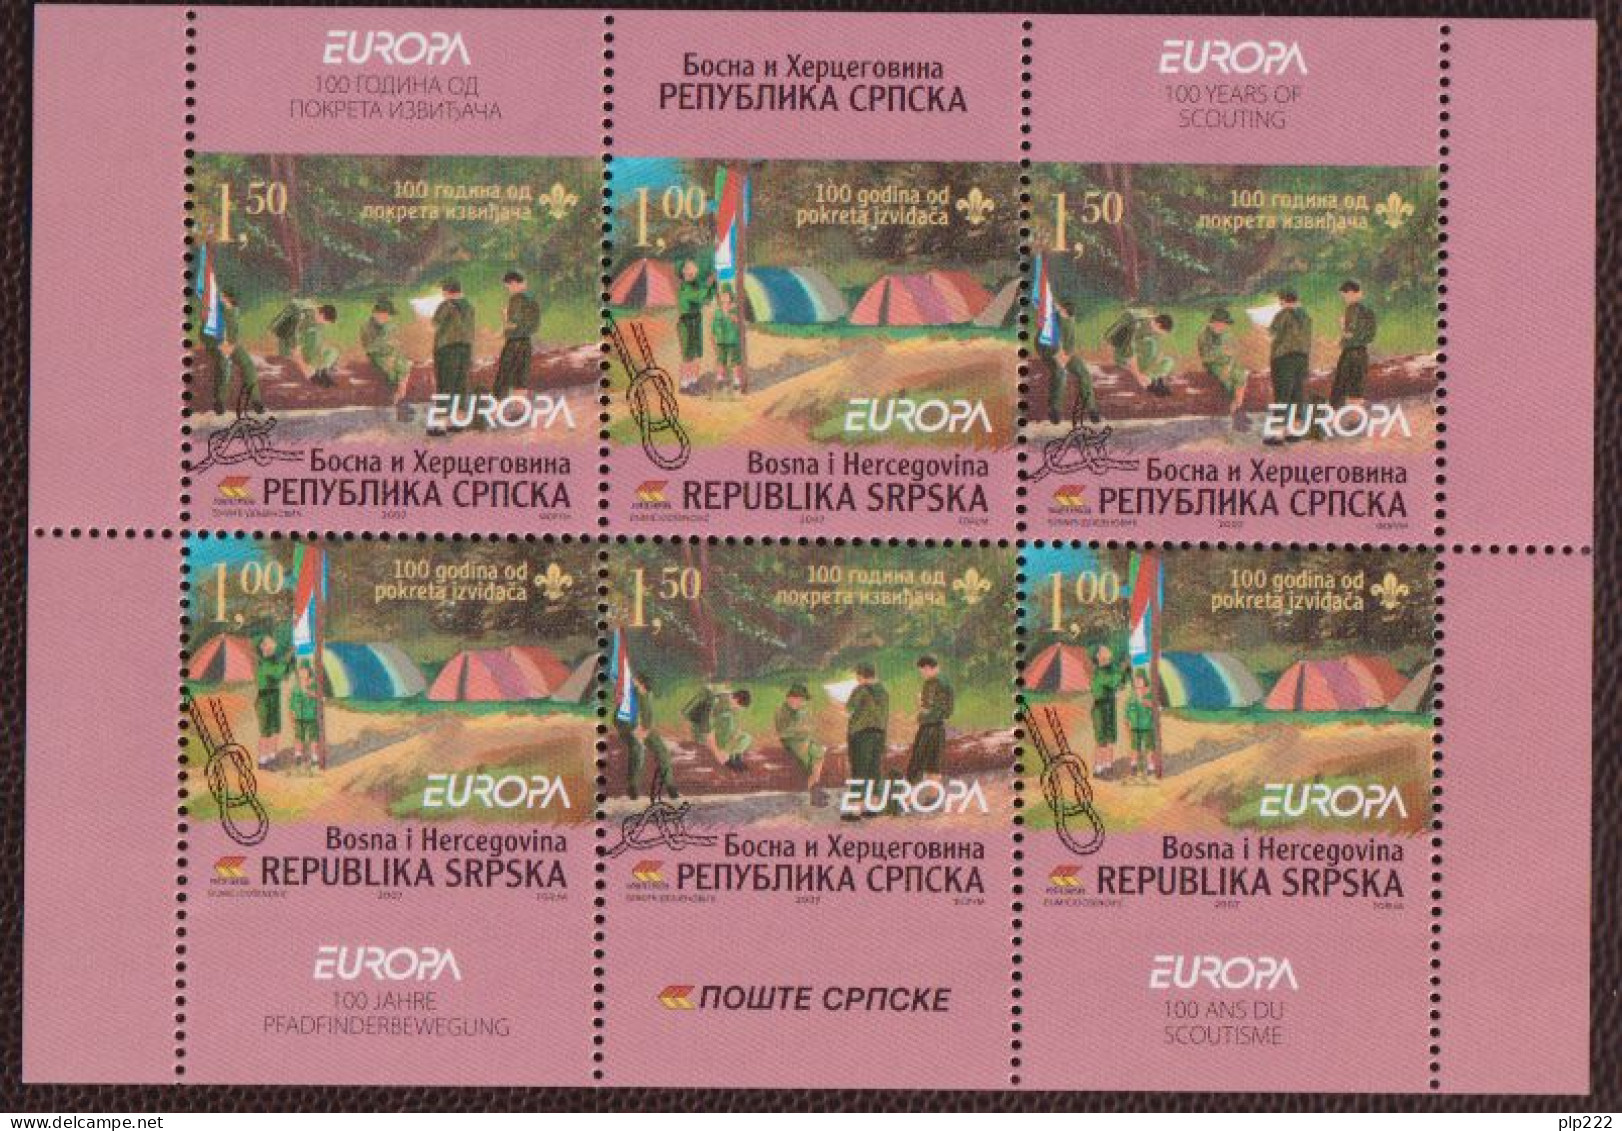 Europa CEPT 2007 Bosnia Serba S/S **/MNH VF - 2007